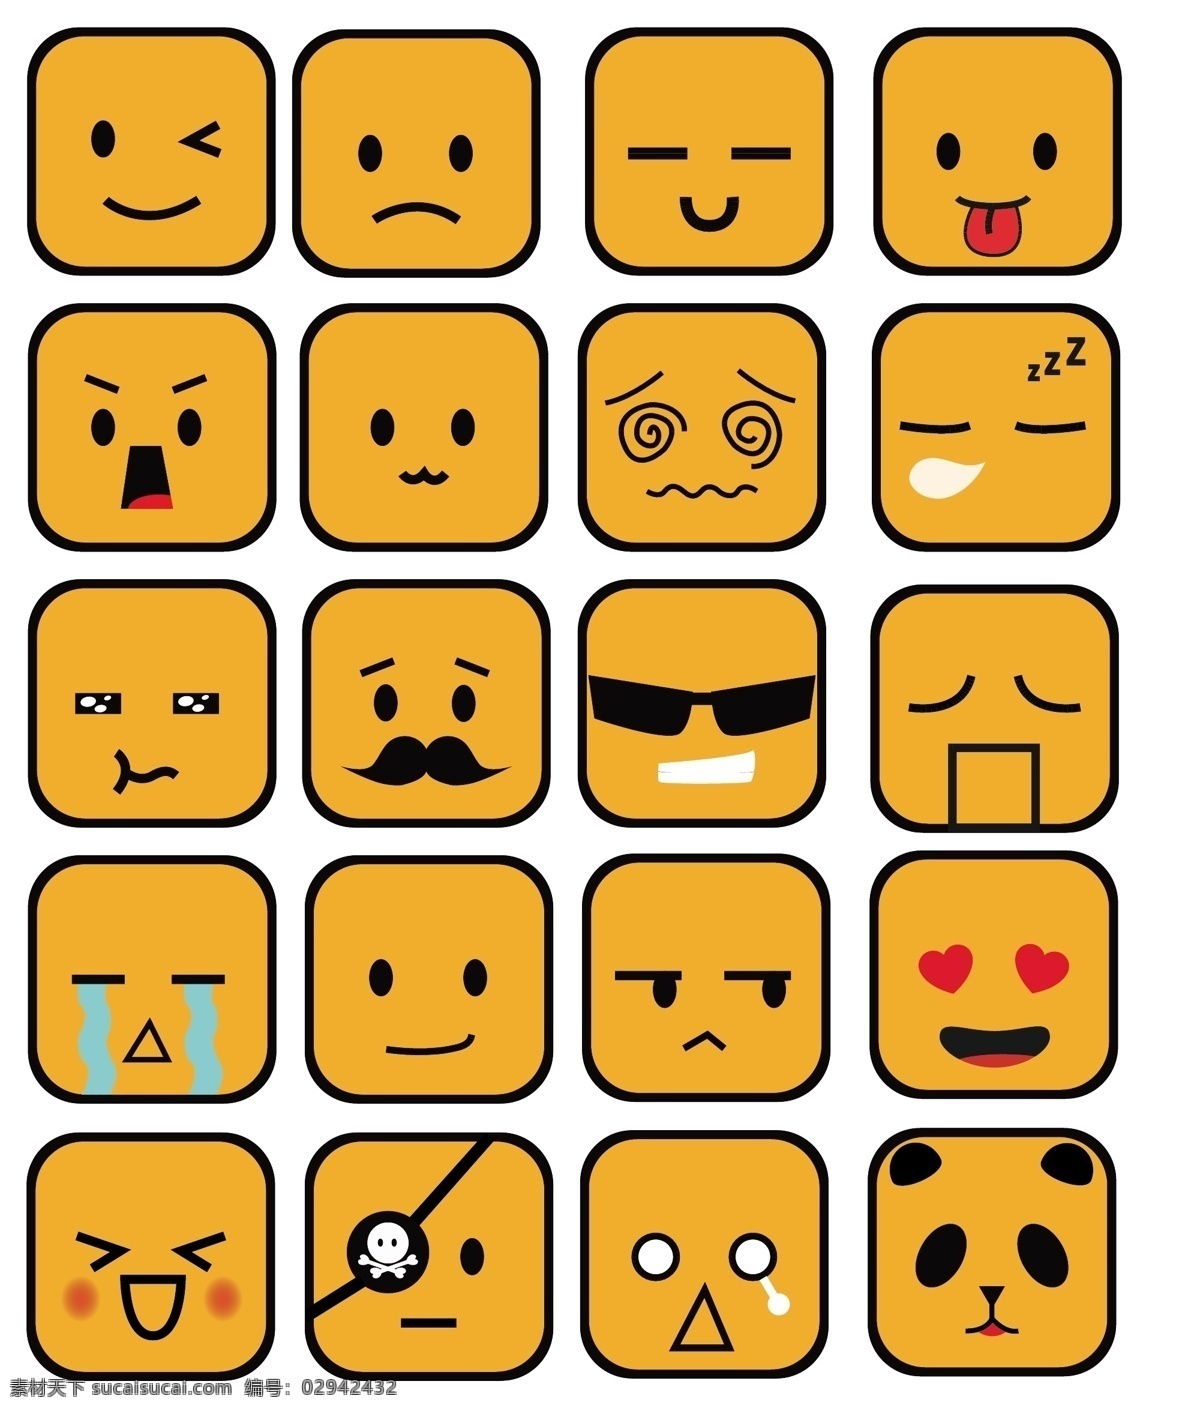 高清 矢量 原创 表情 ui表情 手机表情 原创表情 小表情 可爱表情 ai表情 表情设计 动漫动画